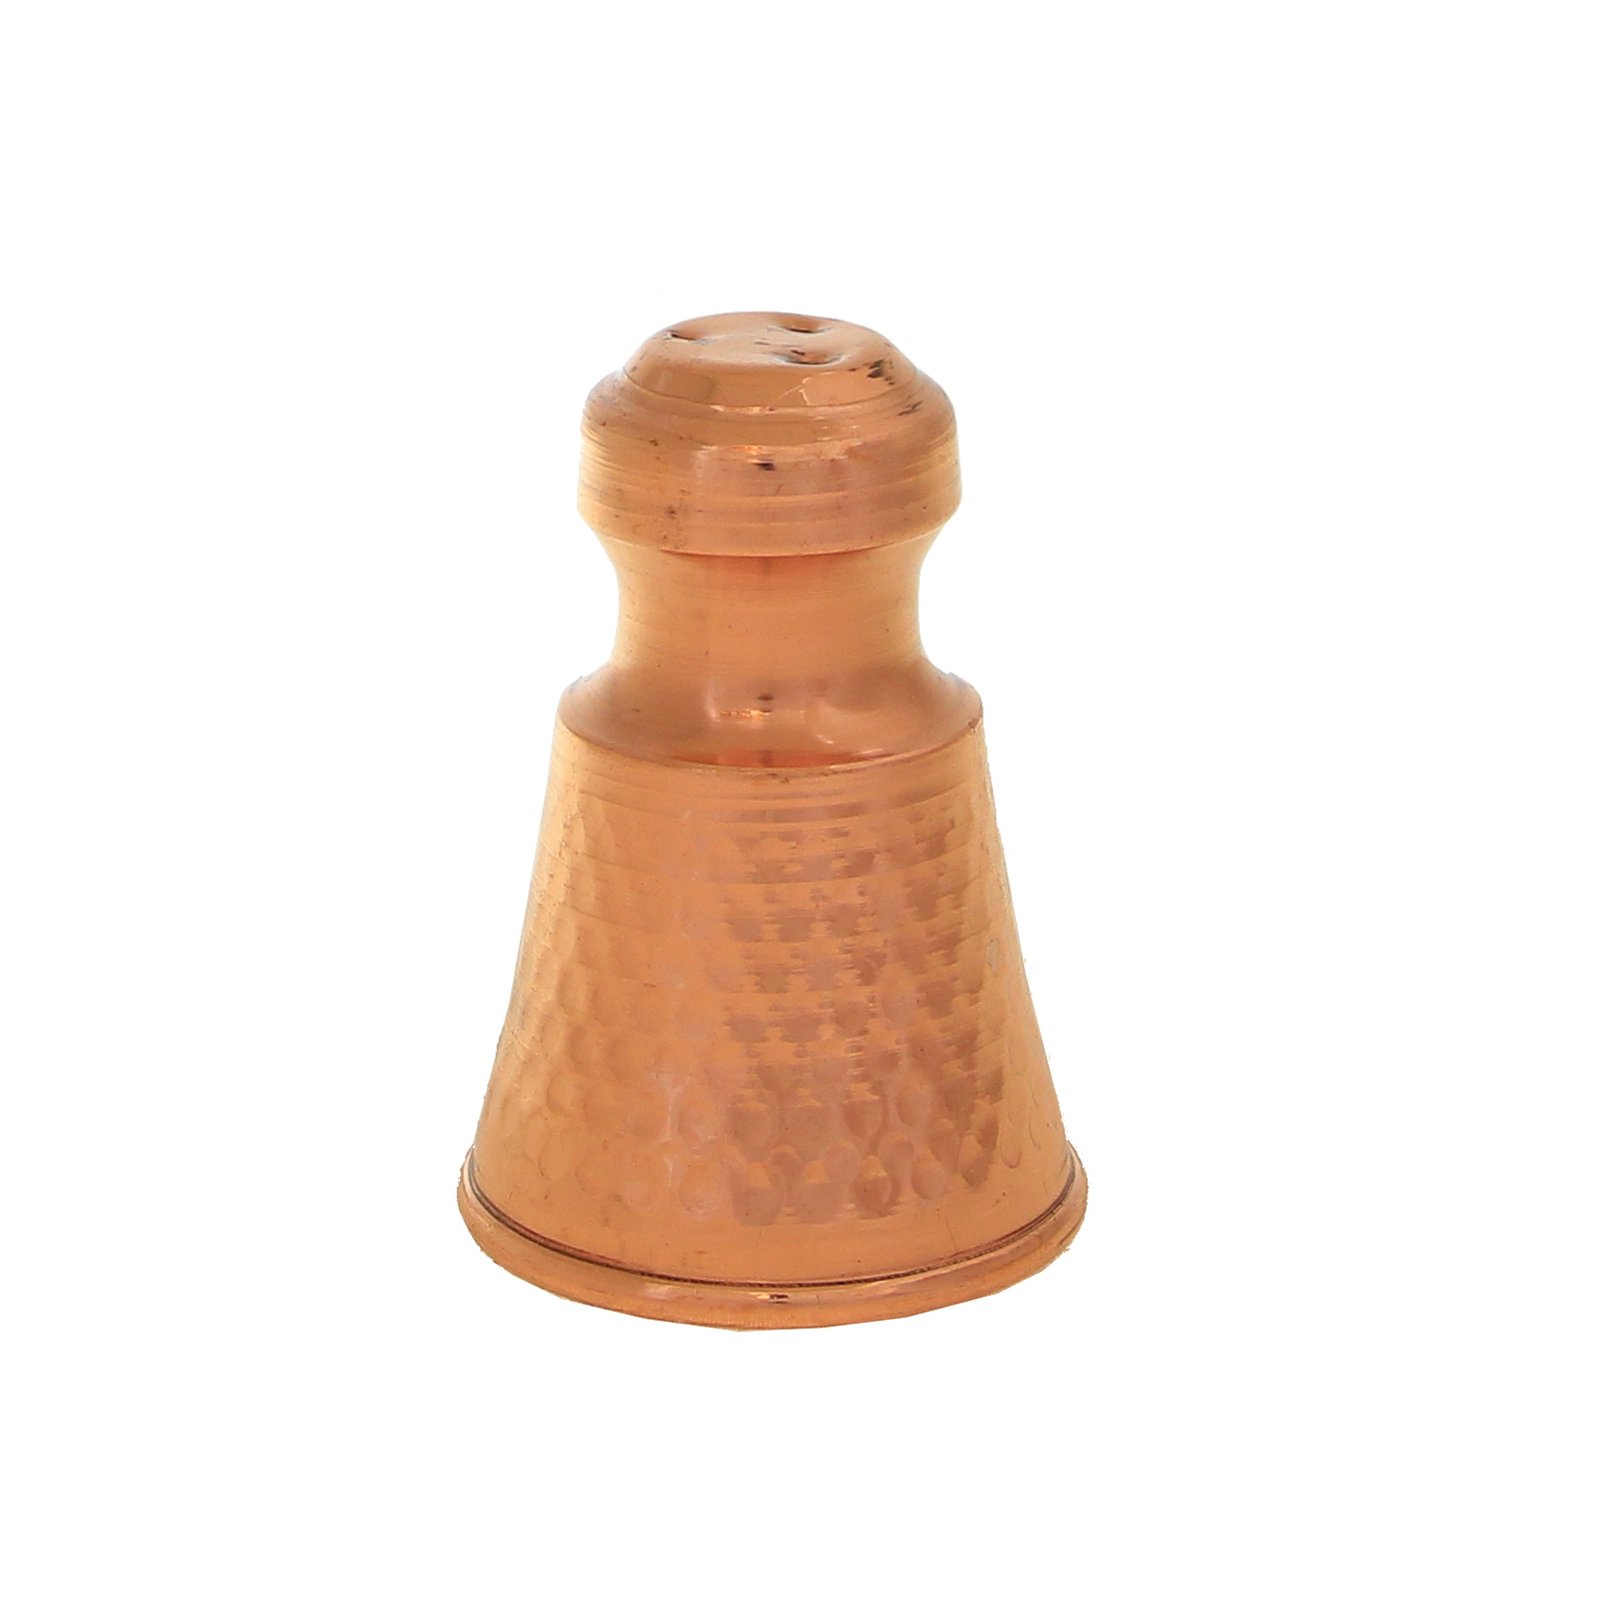 Handicraft Copper Spice container Damani model code 4398,buy copper stuff,buy copper handmades